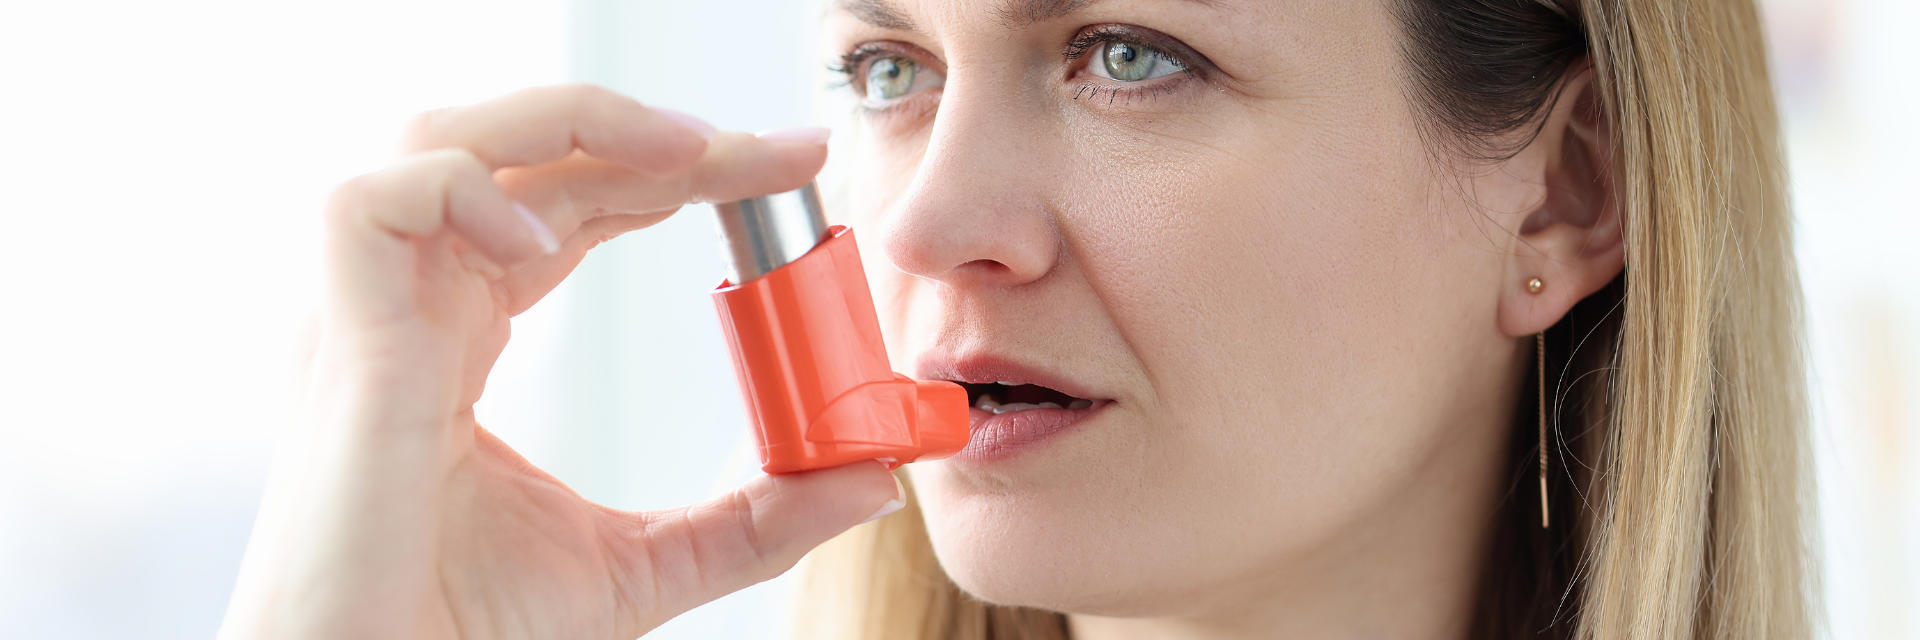 A woman using a reliever inhaler.